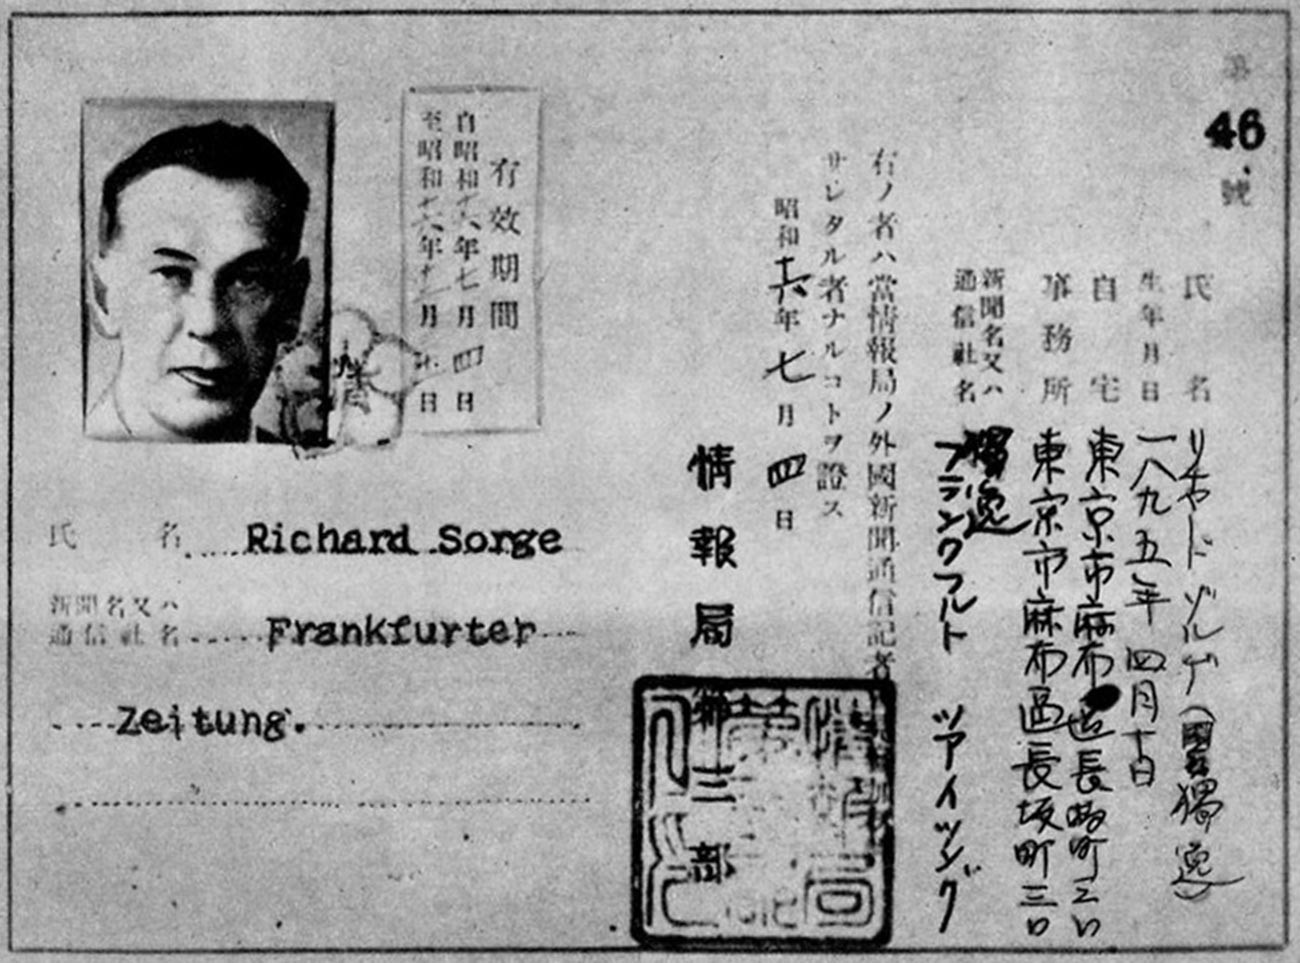 Isprave Richarda Sorgea, glasnogovornika njemačkog veleposlanstva u Japanu.
